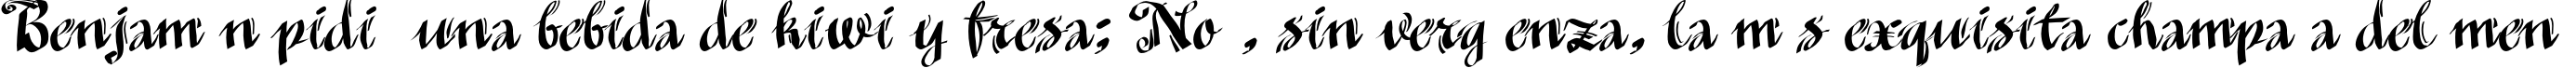 Пример написания шрифтом MinusmanC текста на испанском